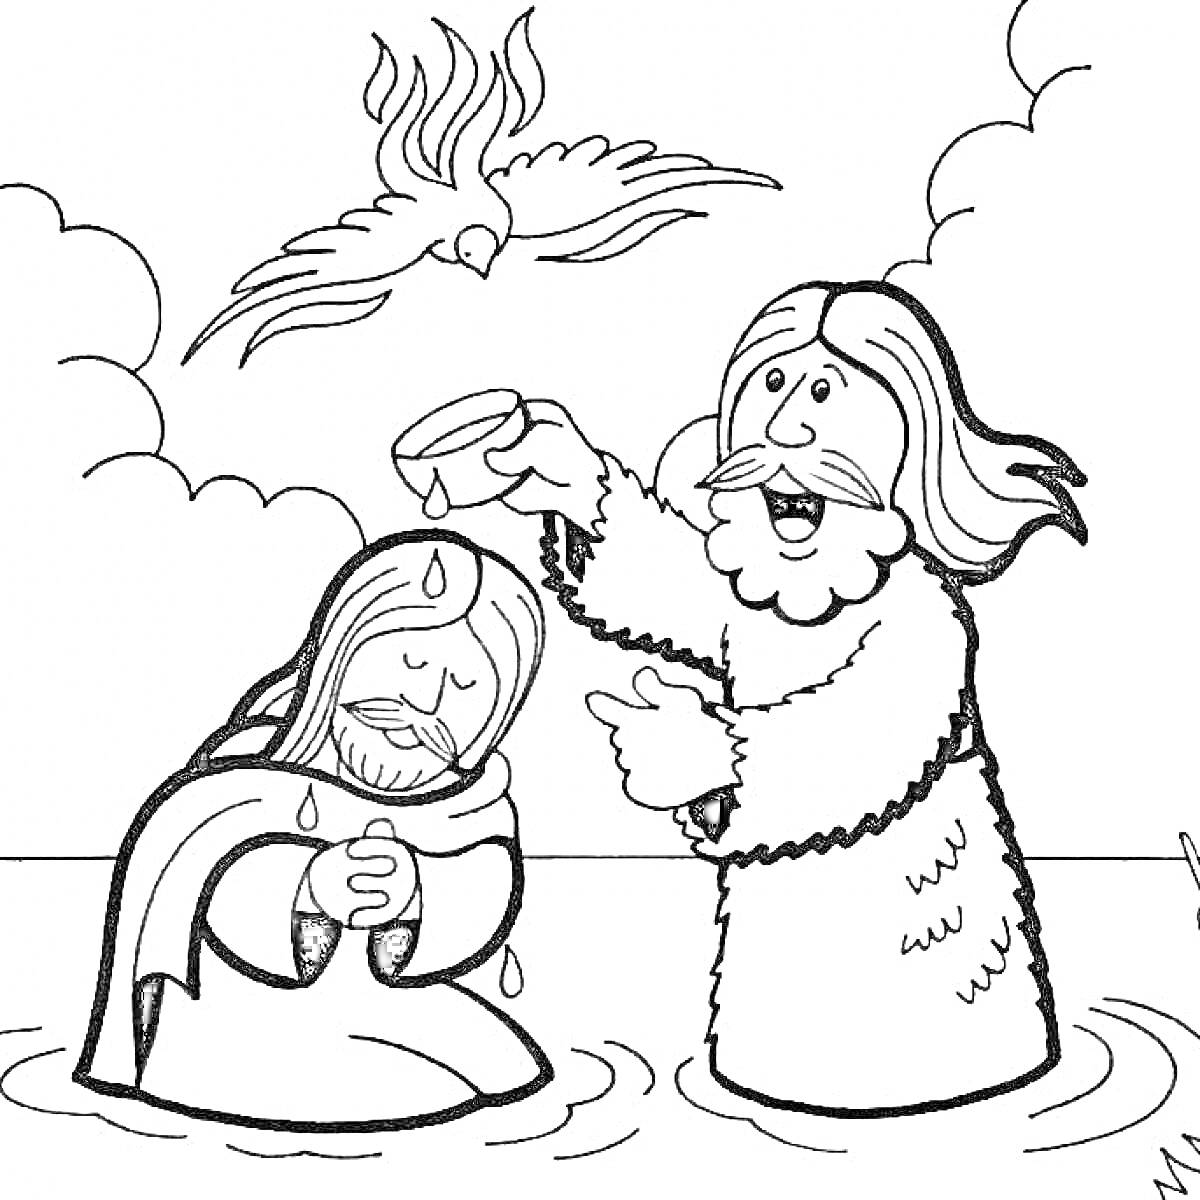 Раскраска Крещение Иисуса, изображение с Иоанном Крестителем, Иисусом и голубем, символизирующим Святого Духа. Иоанн Креститель погружает Иисуса в воду.